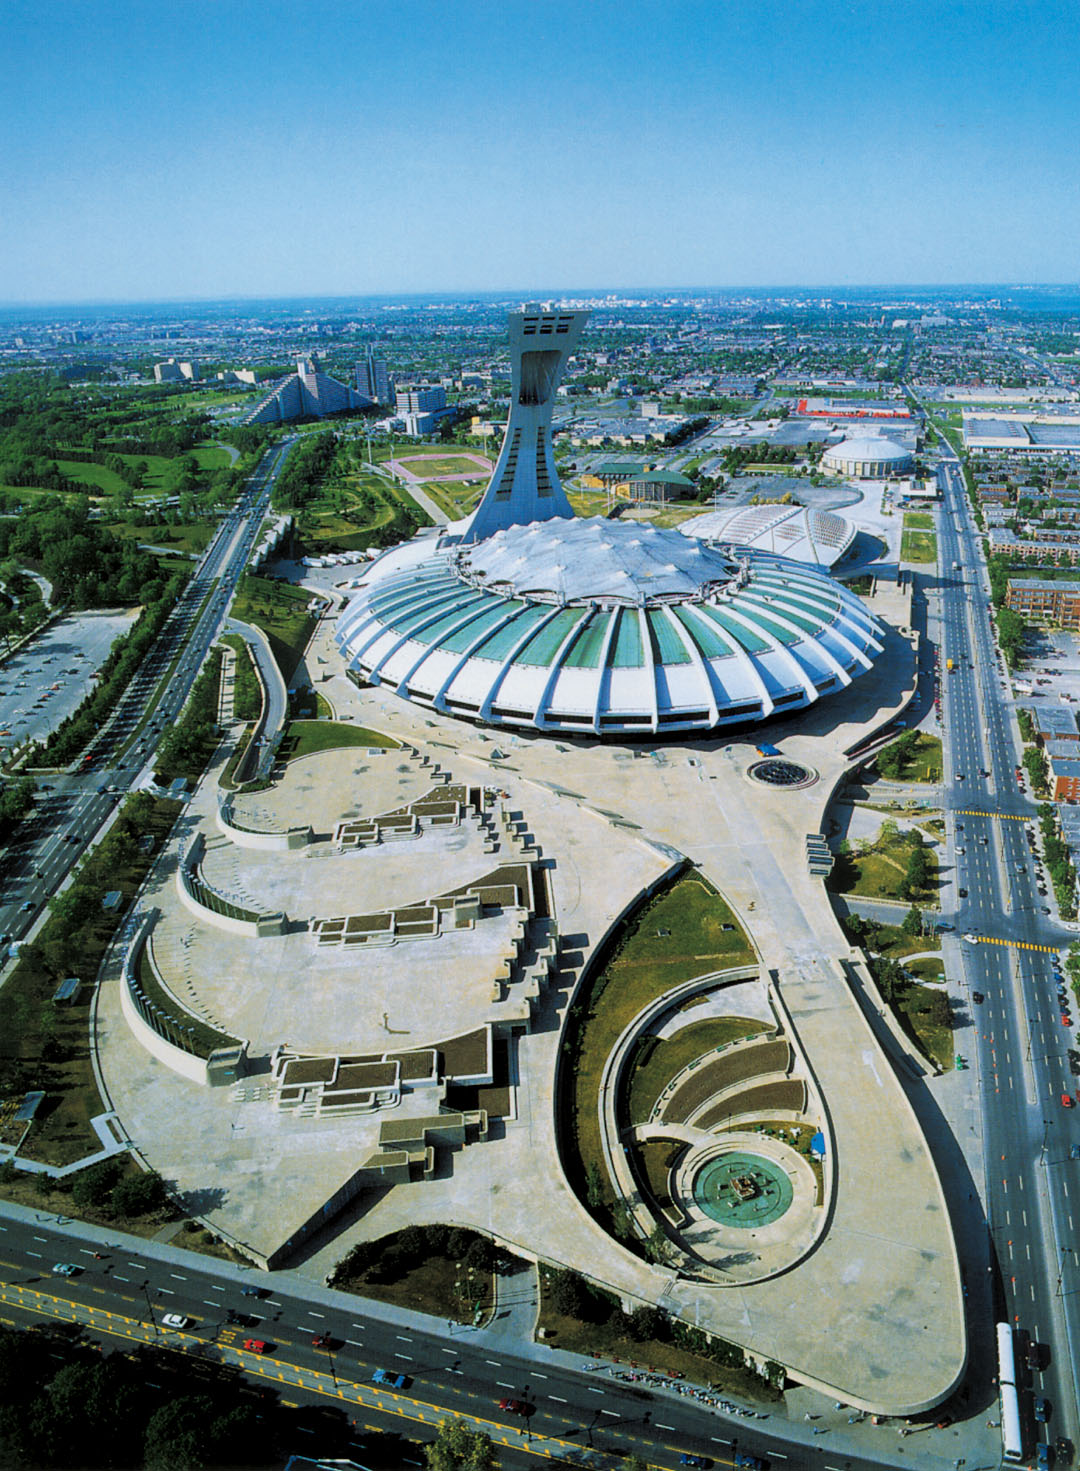 The Stadium - Parc olympique : Parc olympique